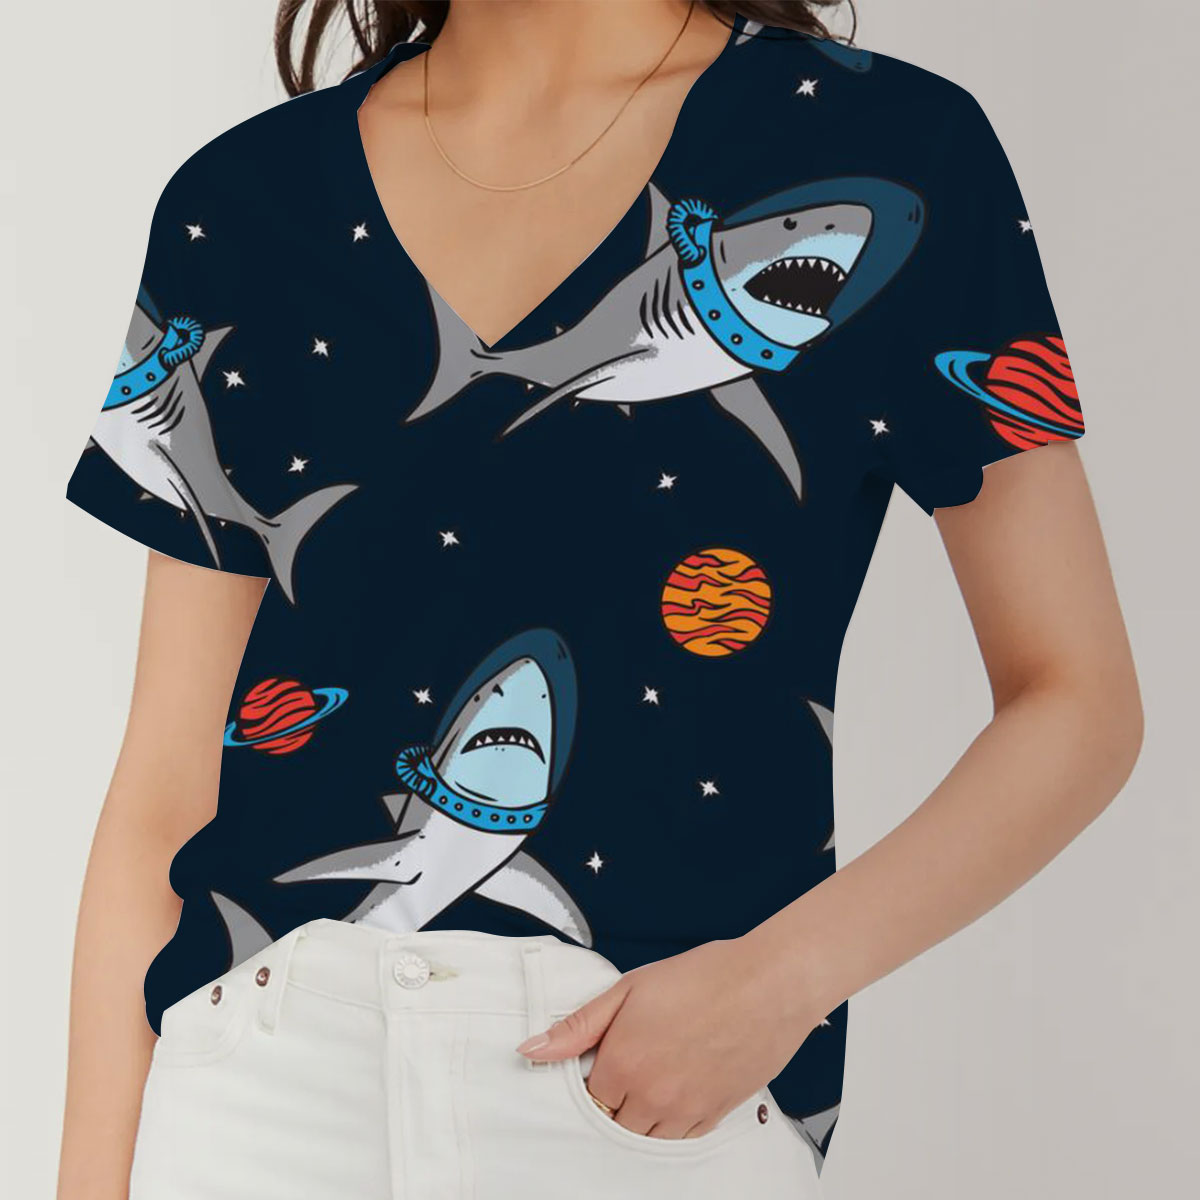 Astronaut Great White Shark V-Neck Women's T-Shirt